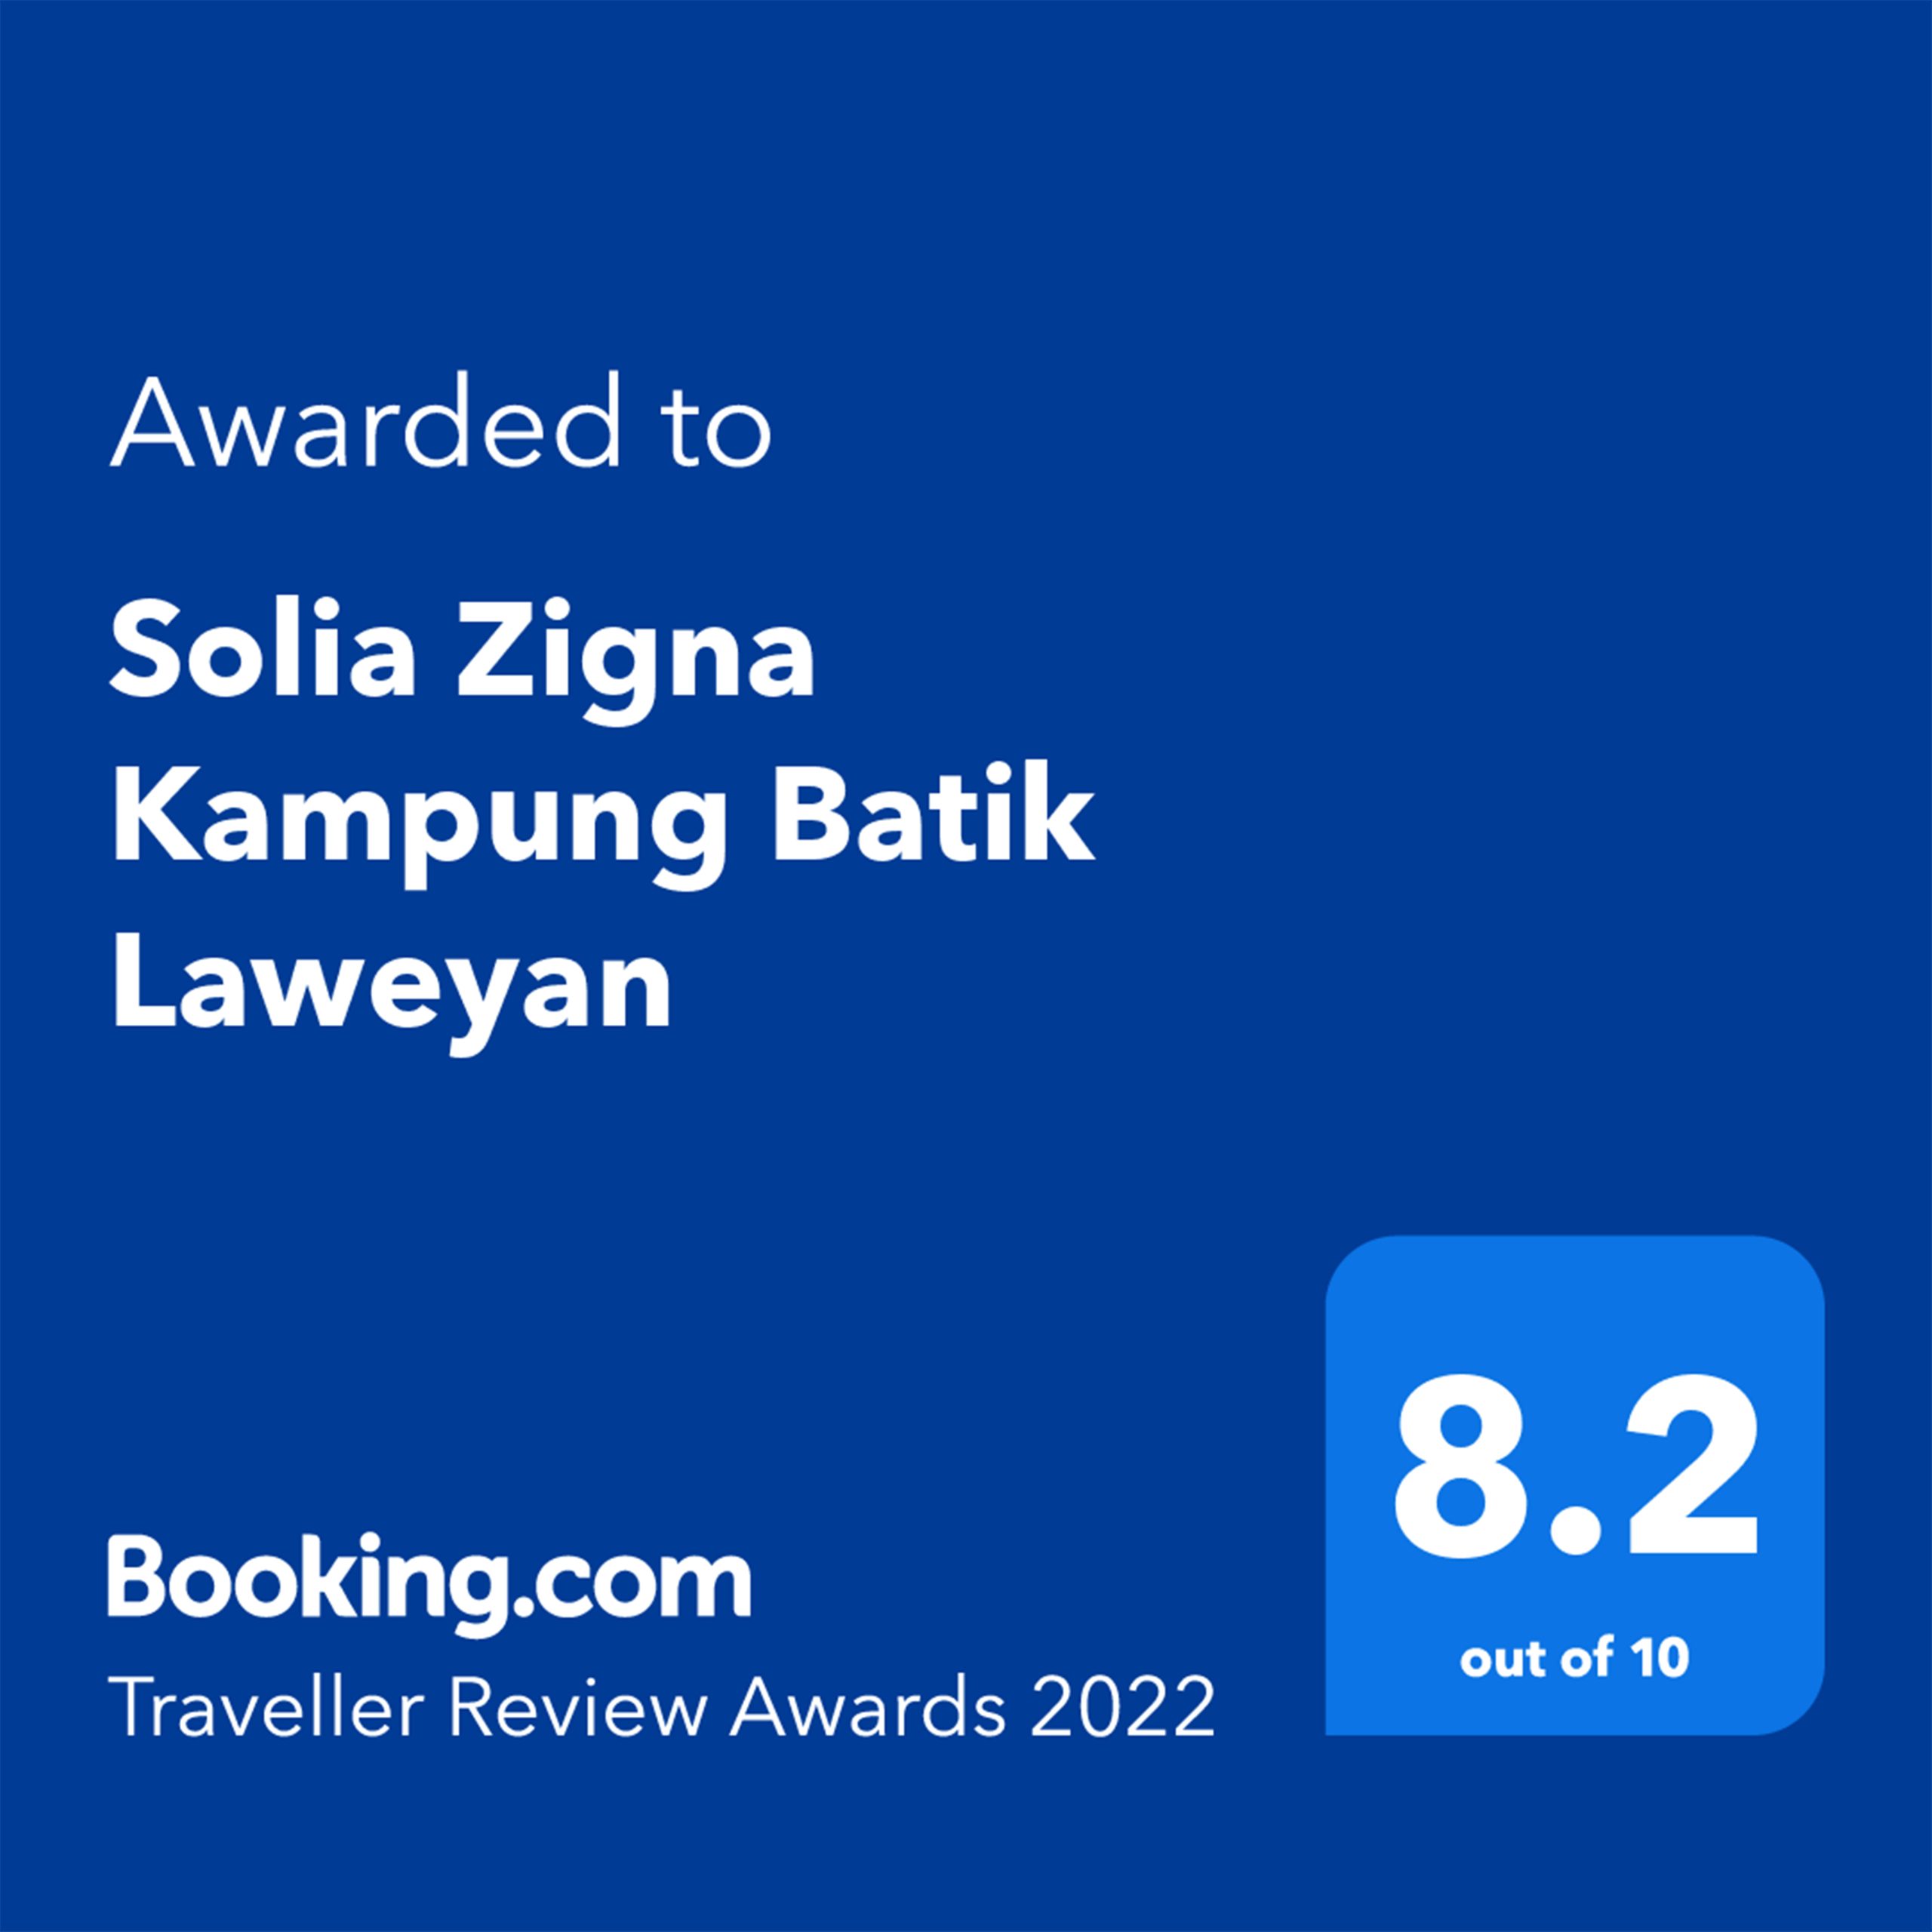 BookingCom Traveller Review Award 2022 Solia Zigna